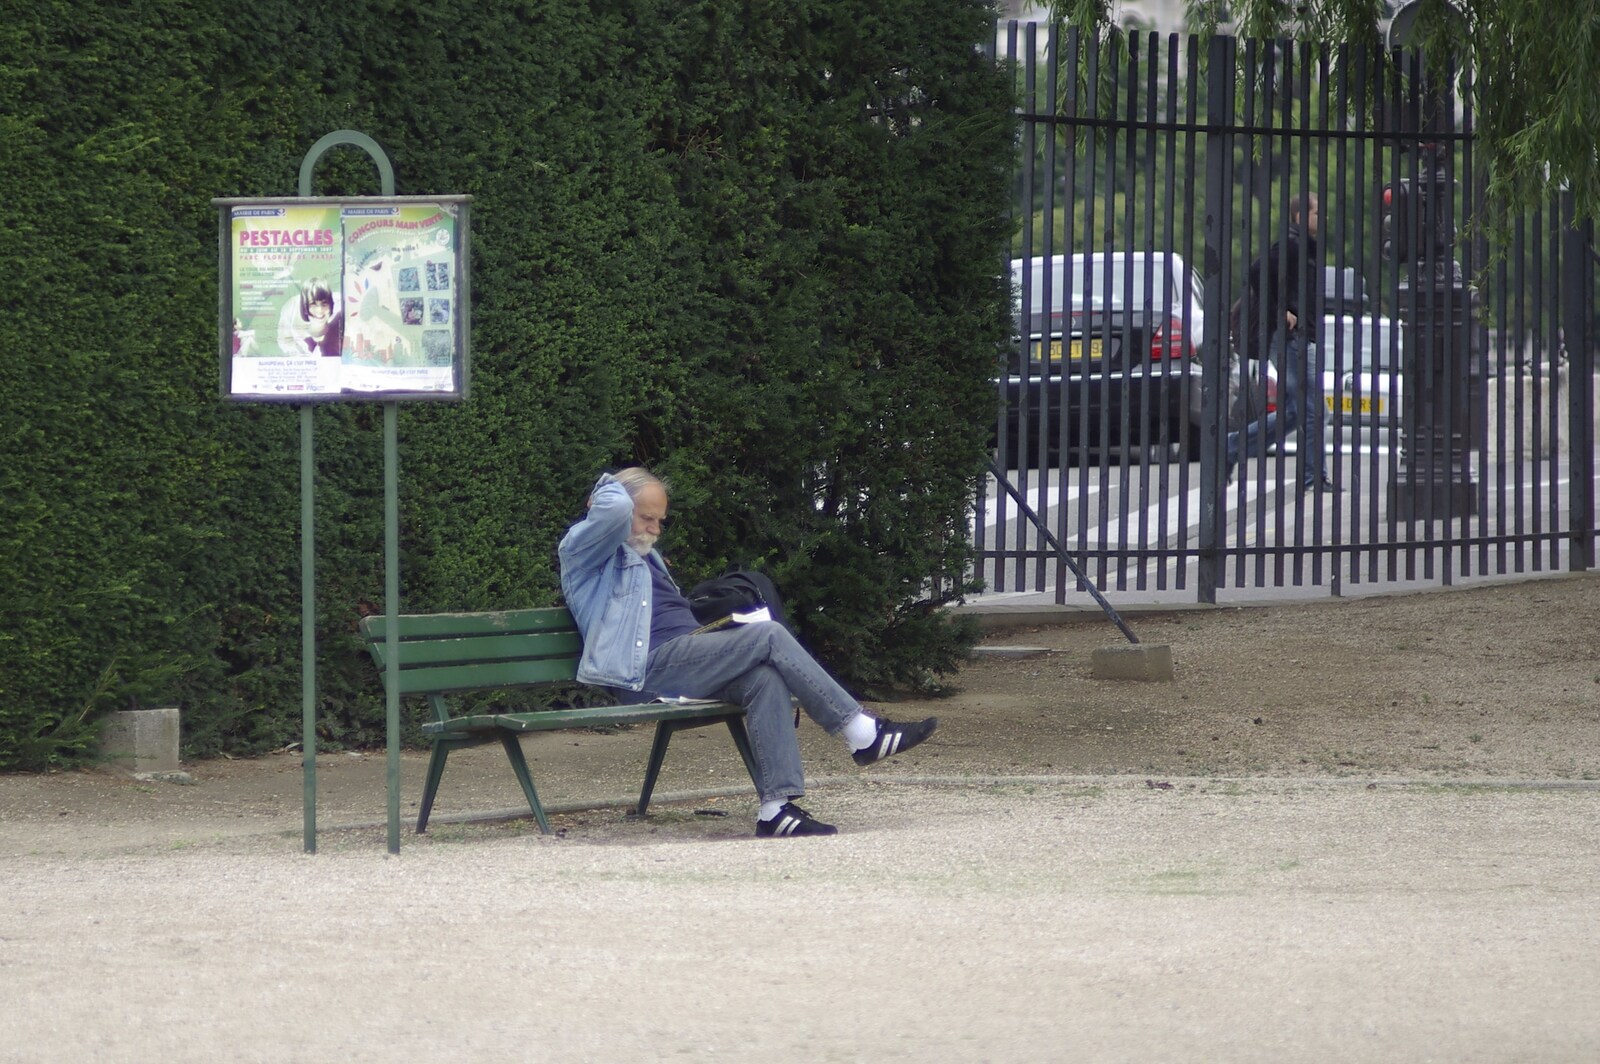 Genesis Live at Parc Des Princes, Paris, France - 30th June 2007: A dude on a bench